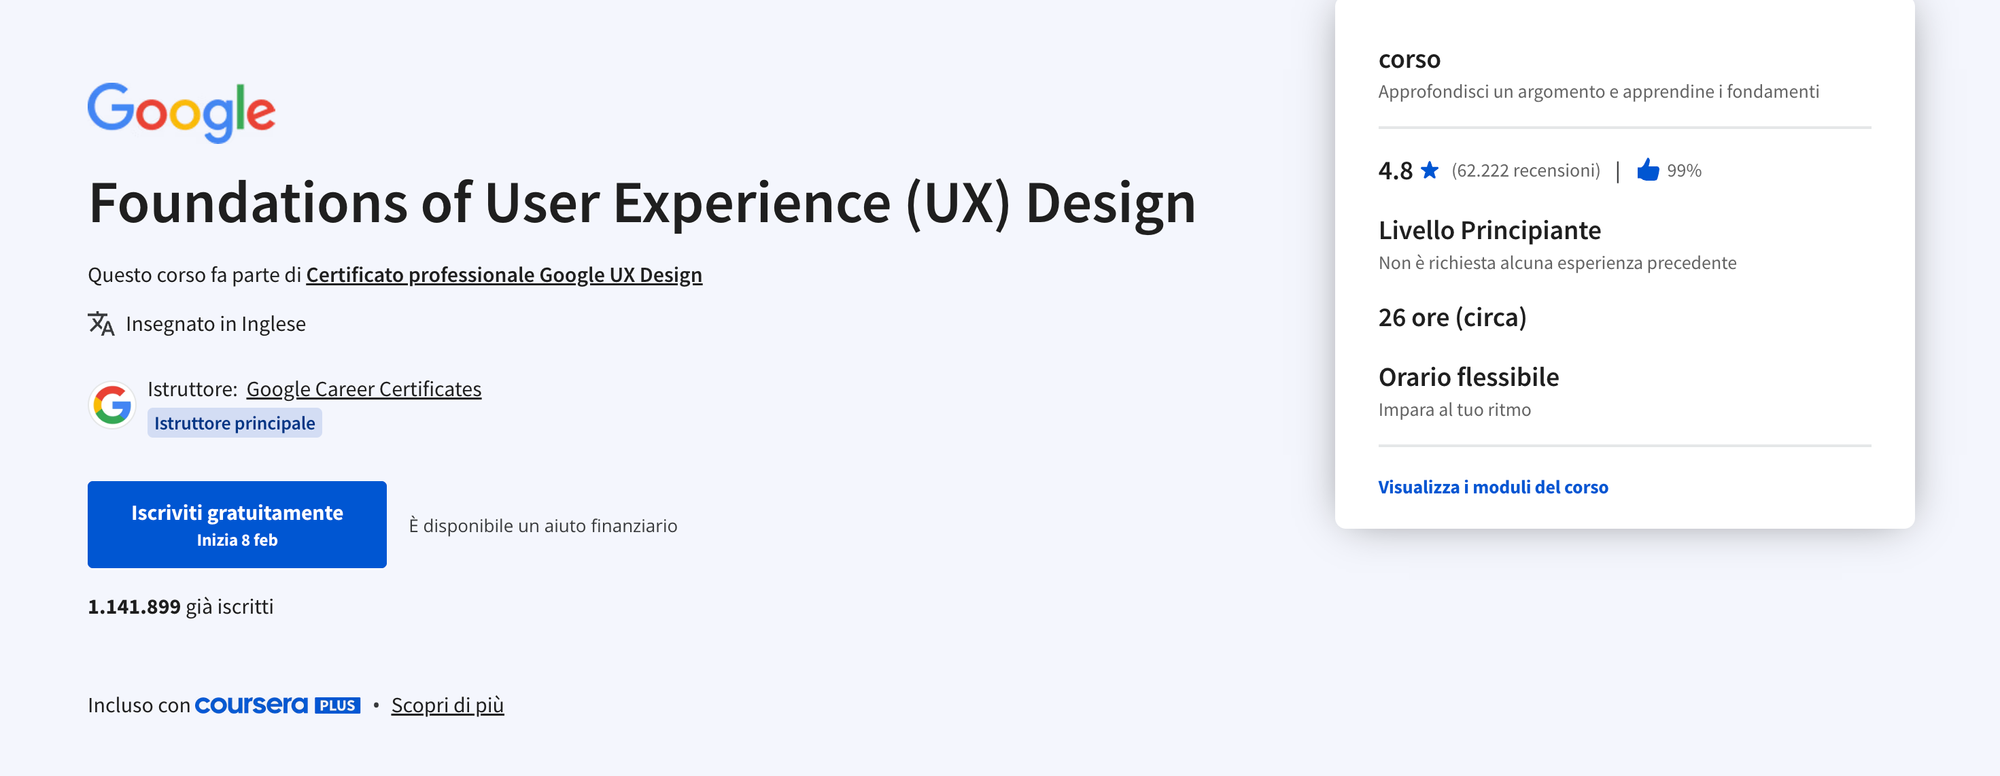 Foundation of User Experience Design, corso in UX di Google